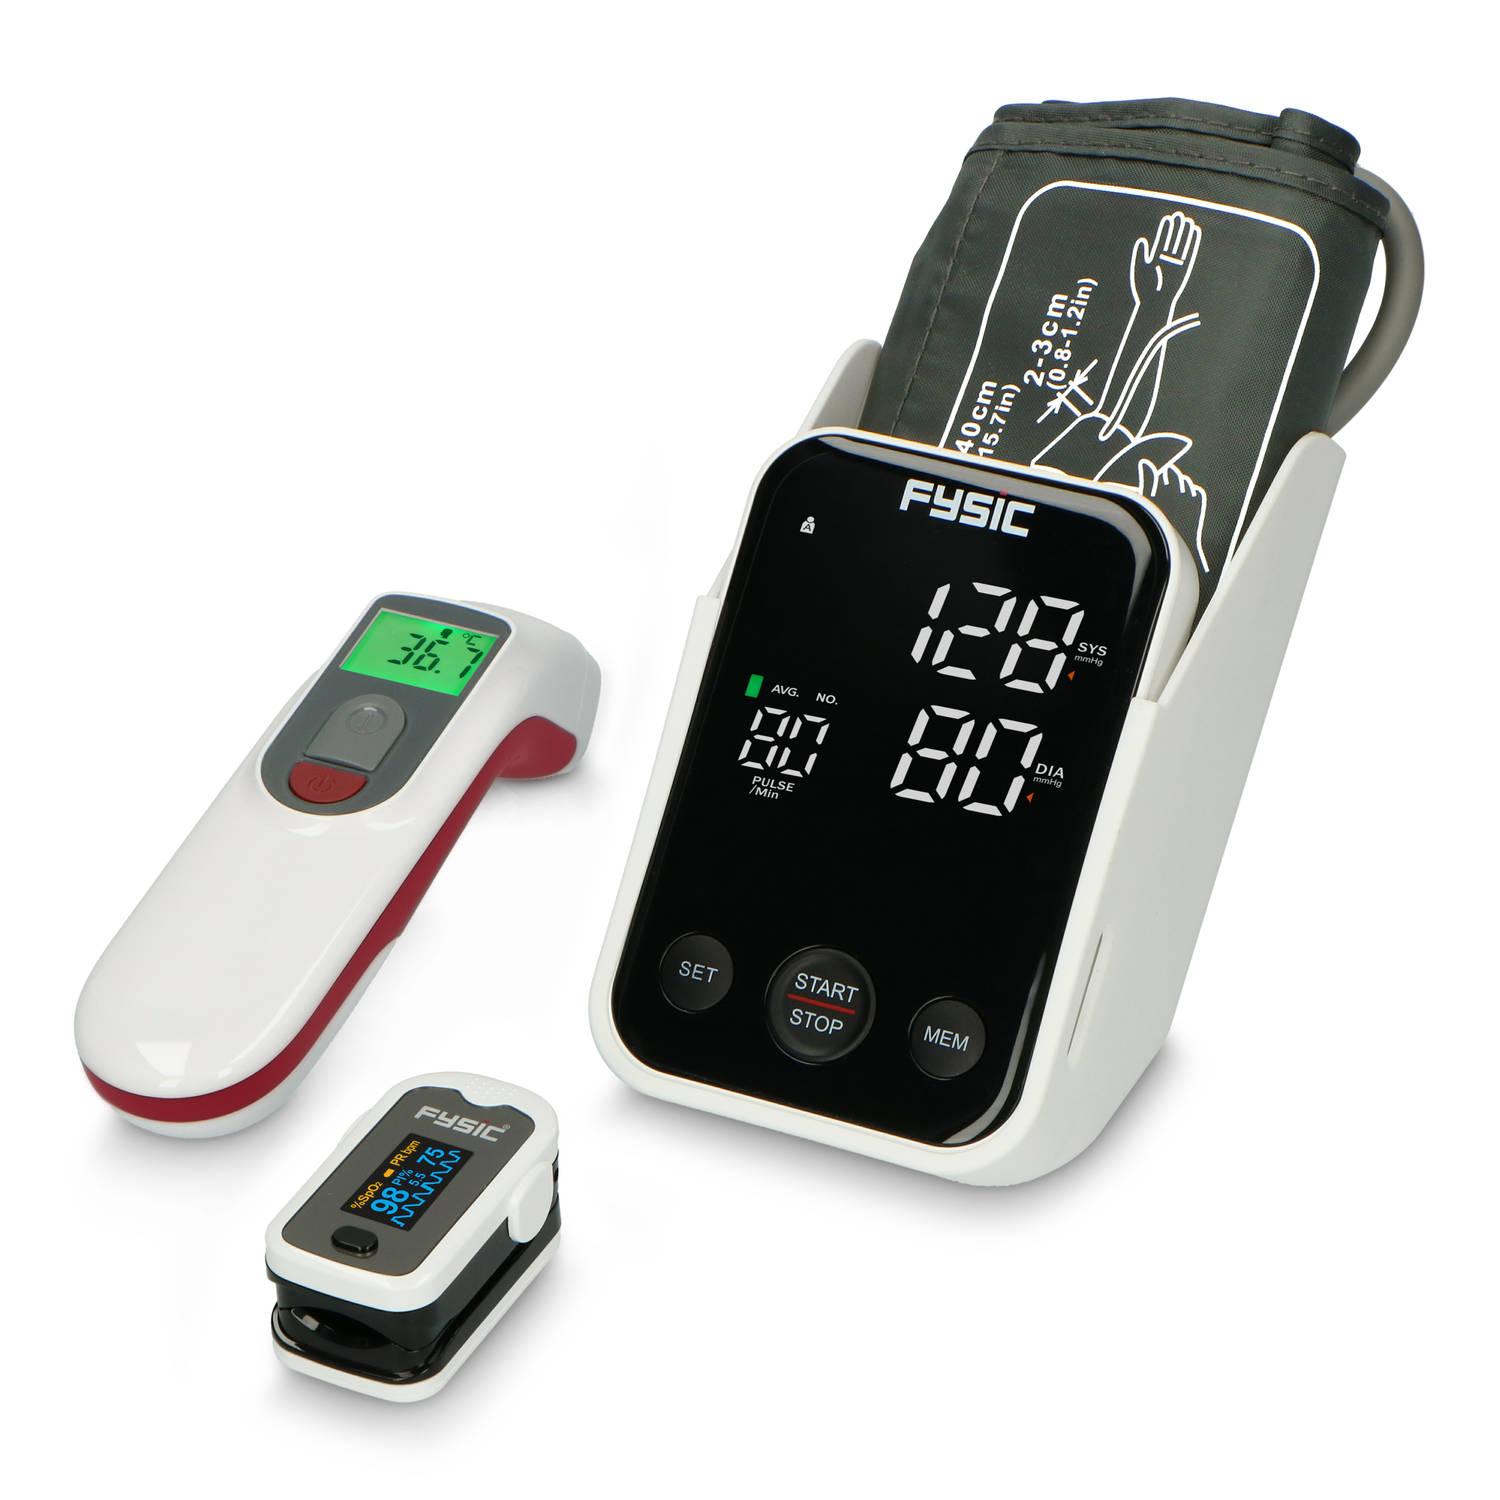 Fysic FCS250 - Gezondheidsmonitoring set voor thuis - Bloeddrukmeter - Saturatiemeter - Infrarood Thermometer